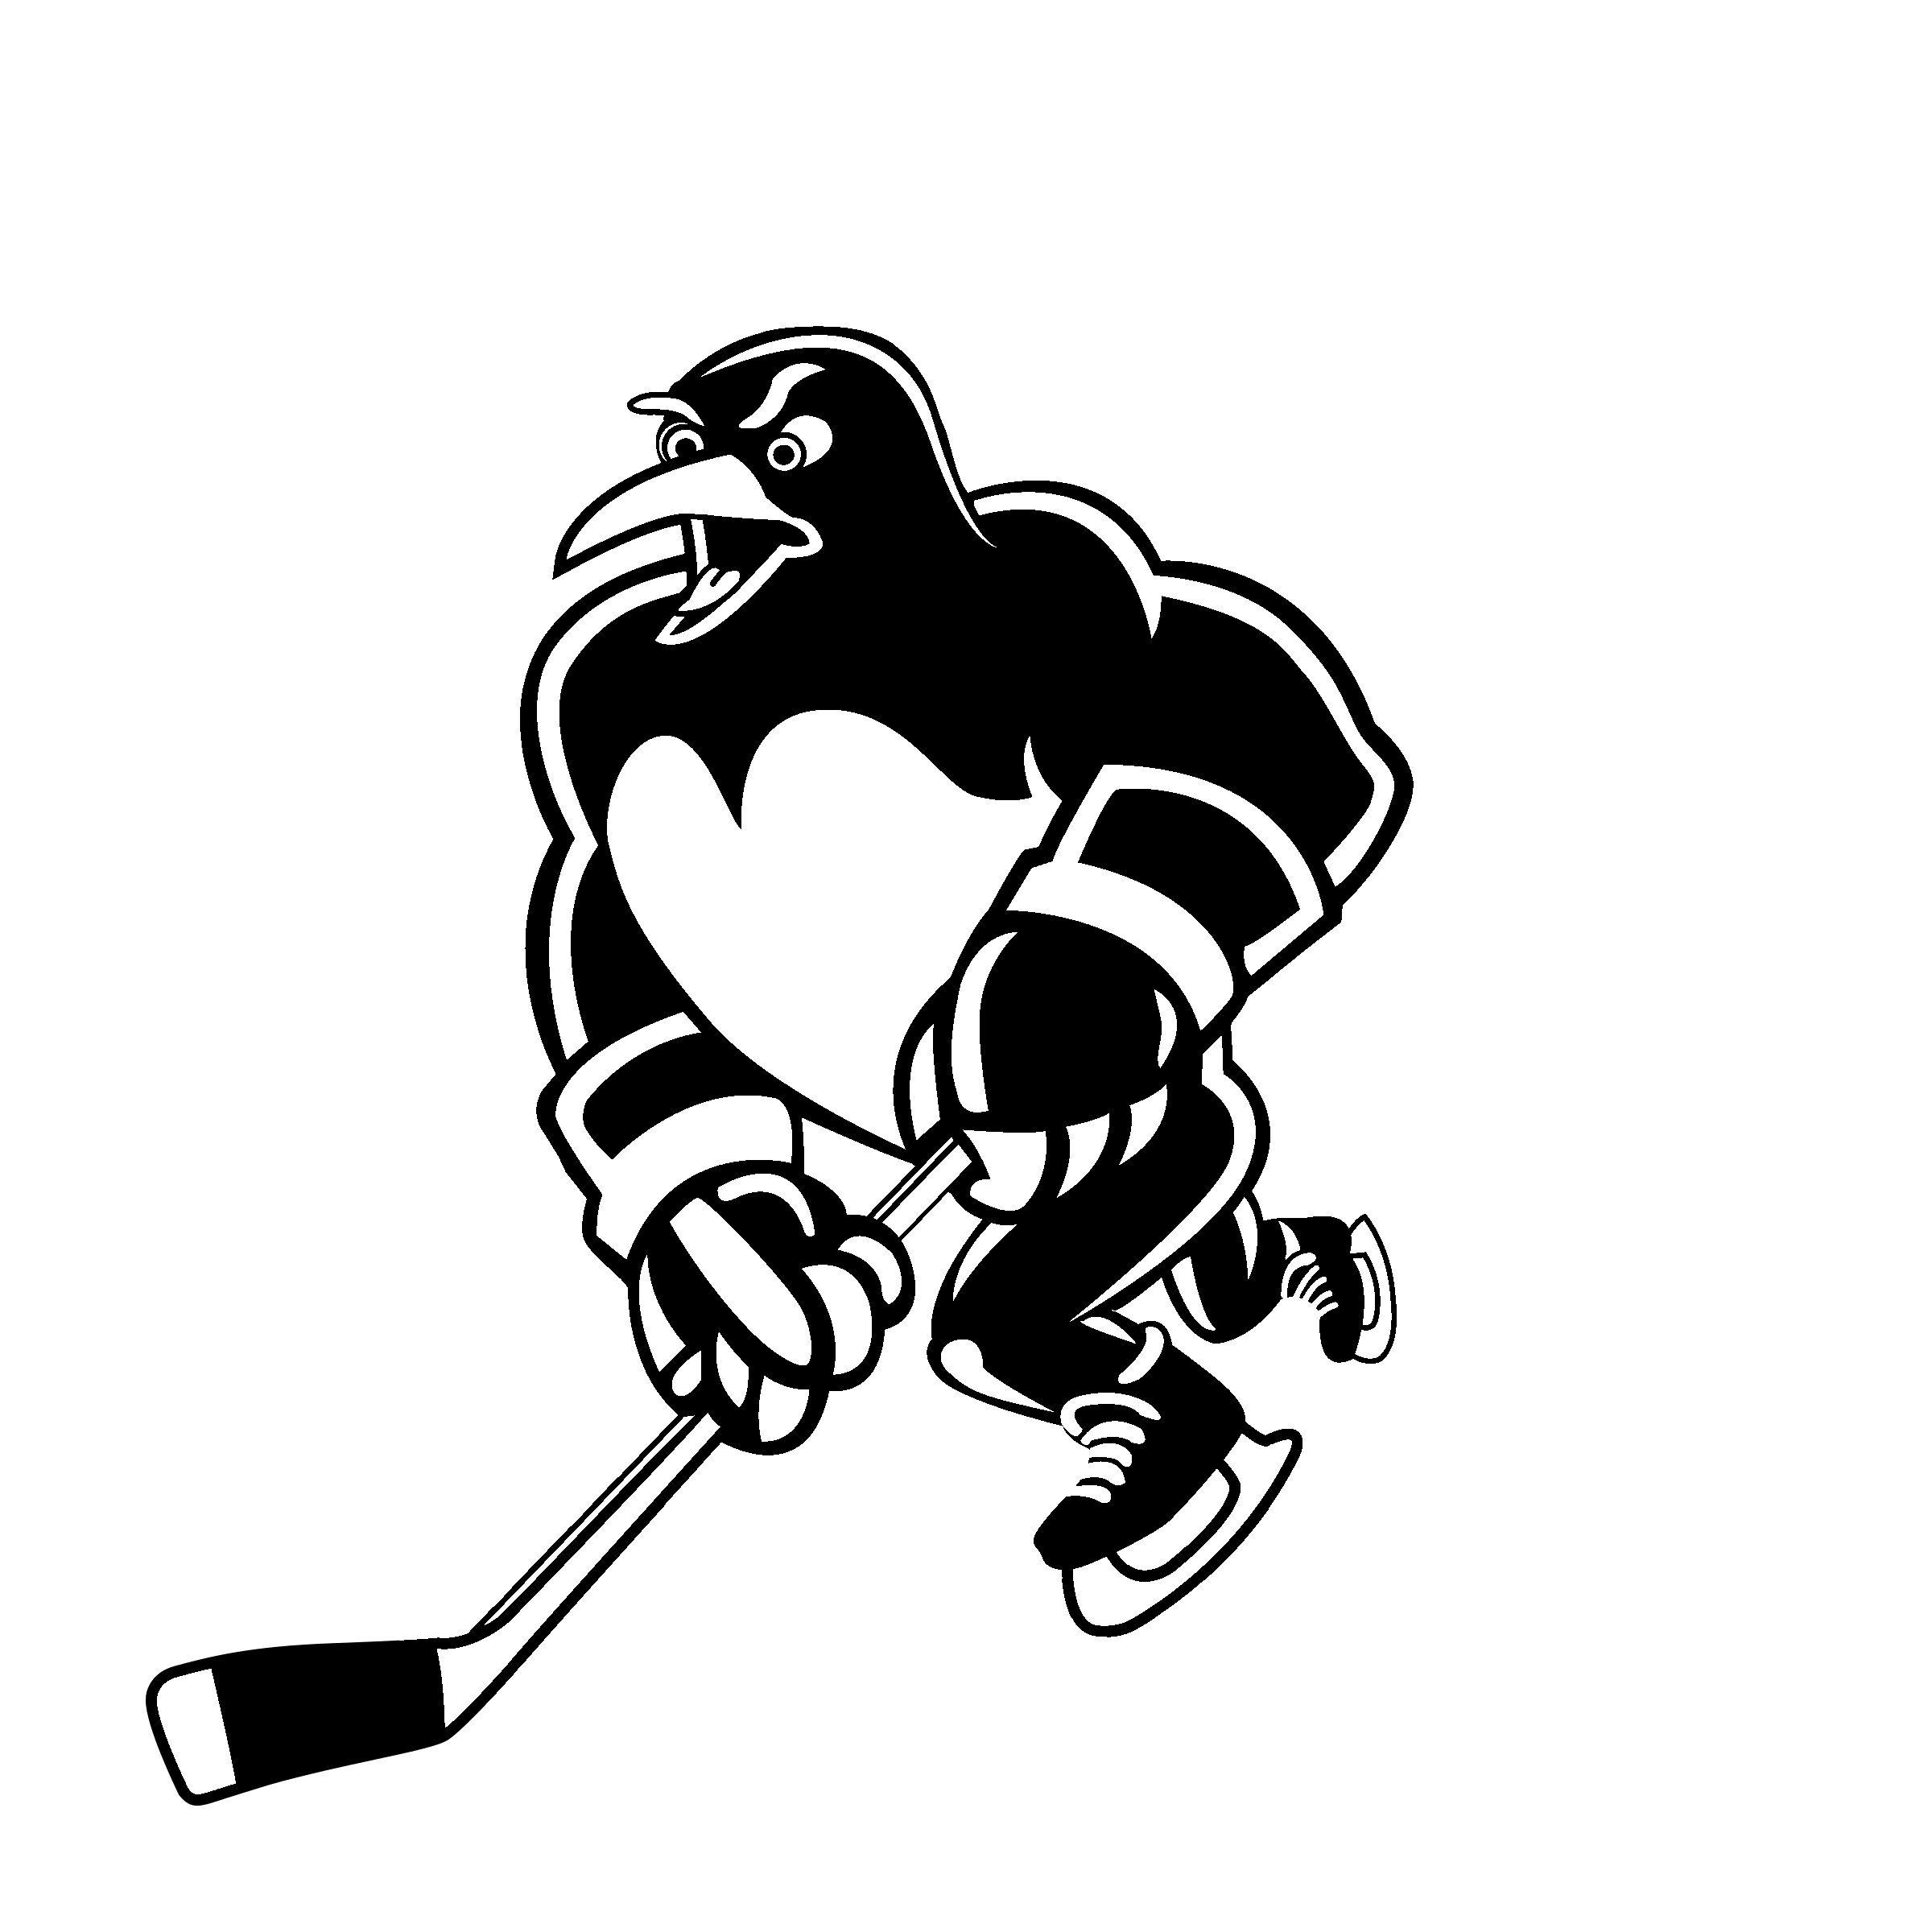 Black and White Penguins Logo - Wilkes Barre Scranton Penguins Logo PNG Transparent & SVG Vector